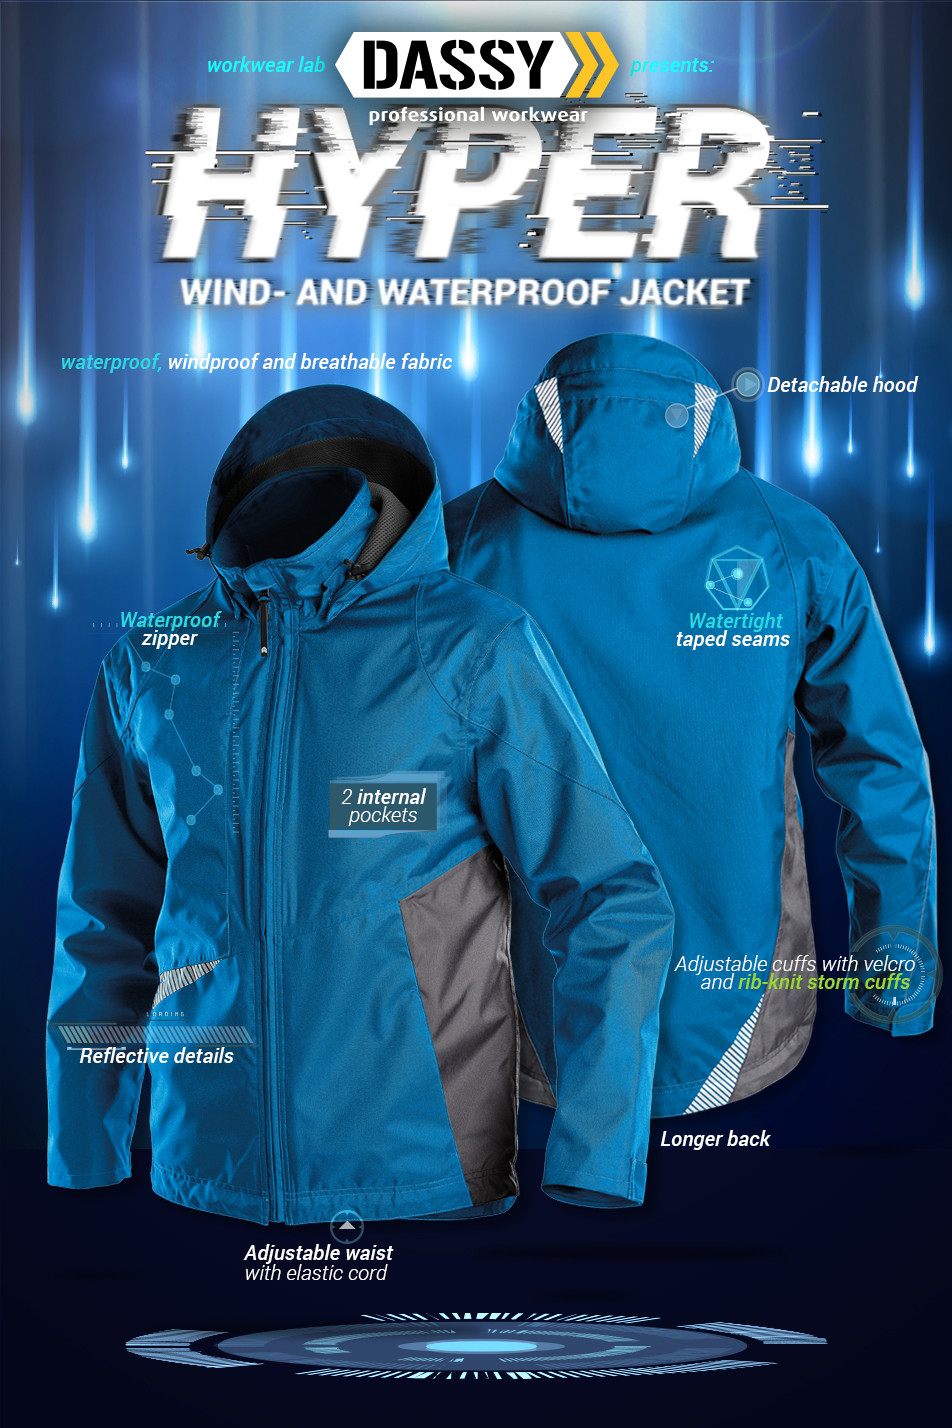 Wind- and waterproof jacket 